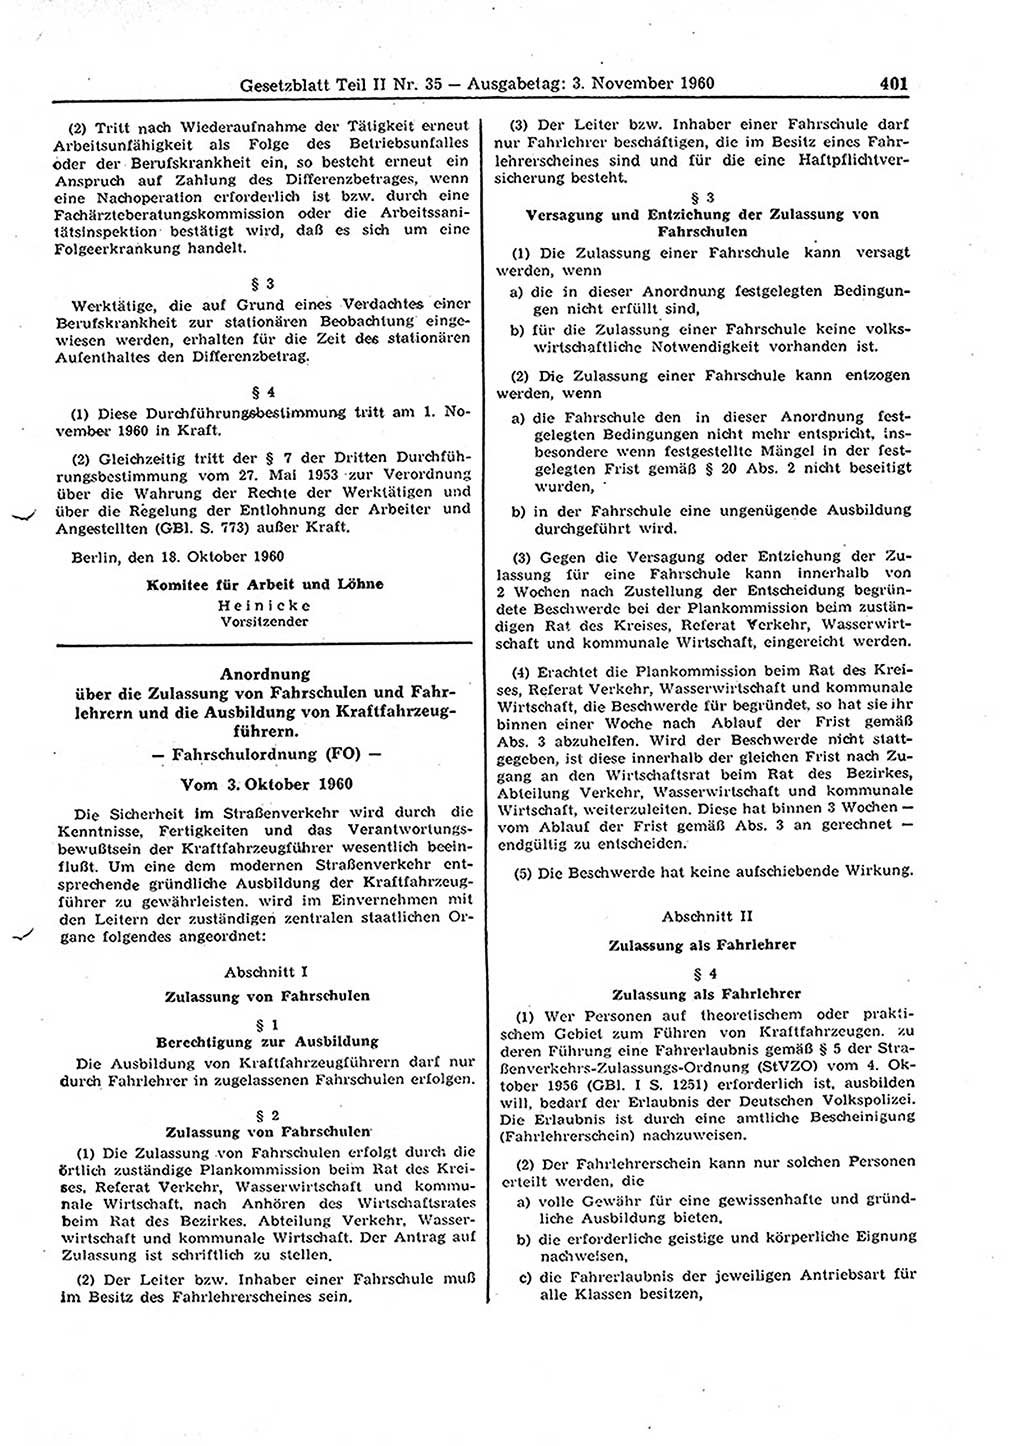 Gesetzblatt (GBl.) der Deutschen Demokratischen Republik (DDR) Teil ⅠⅠ 1960, Seite 401 (GBl. DDR ⅠⅠ 1960, S. 401)